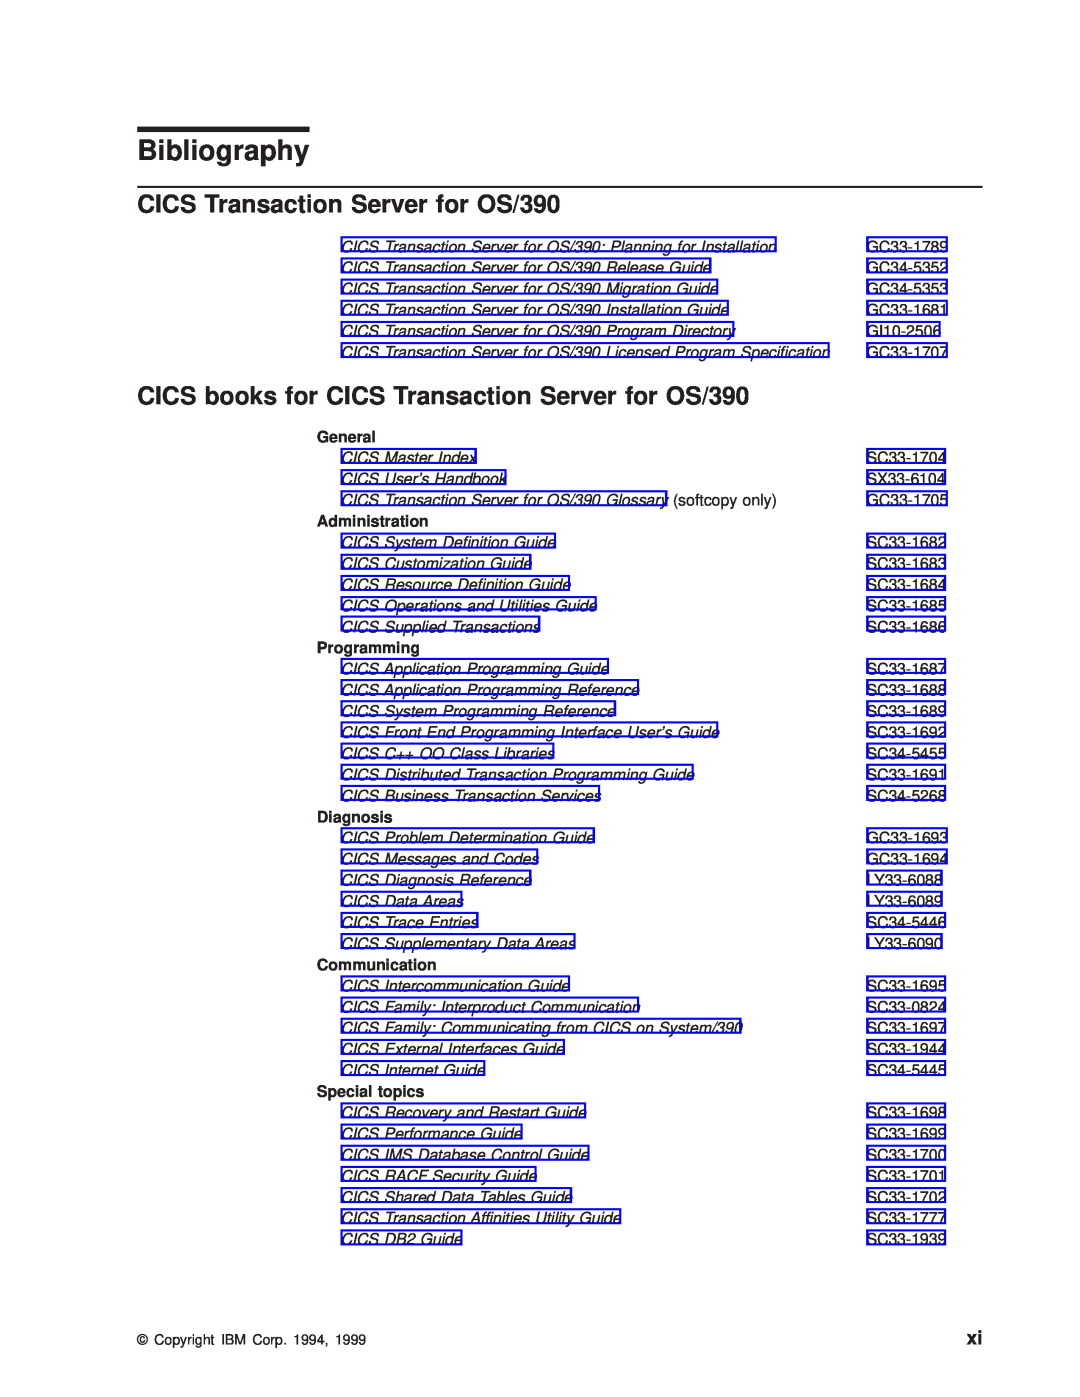 IBM manual Bibliography, CICS books for CICS Transaction Server for OS/390, GI10-2506, CICS Master Index, SX33-6104 